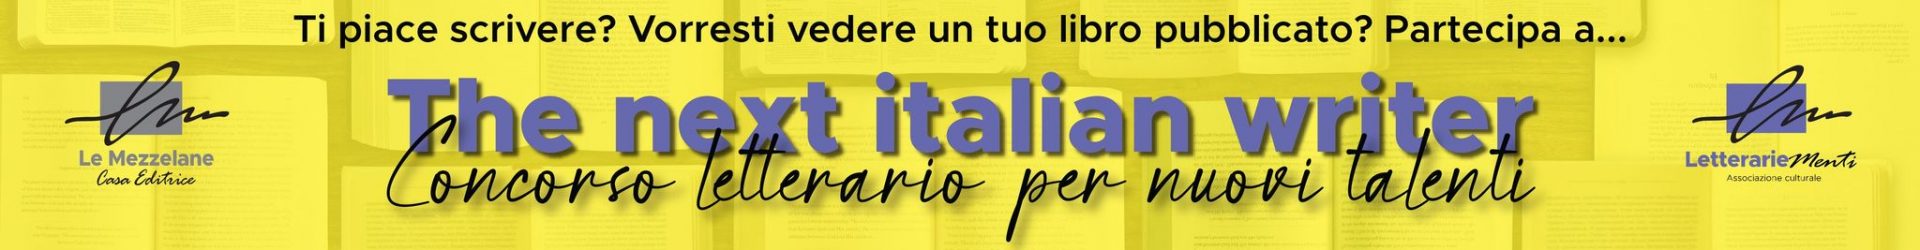 Concorso Letterario “The Next Italian Writer